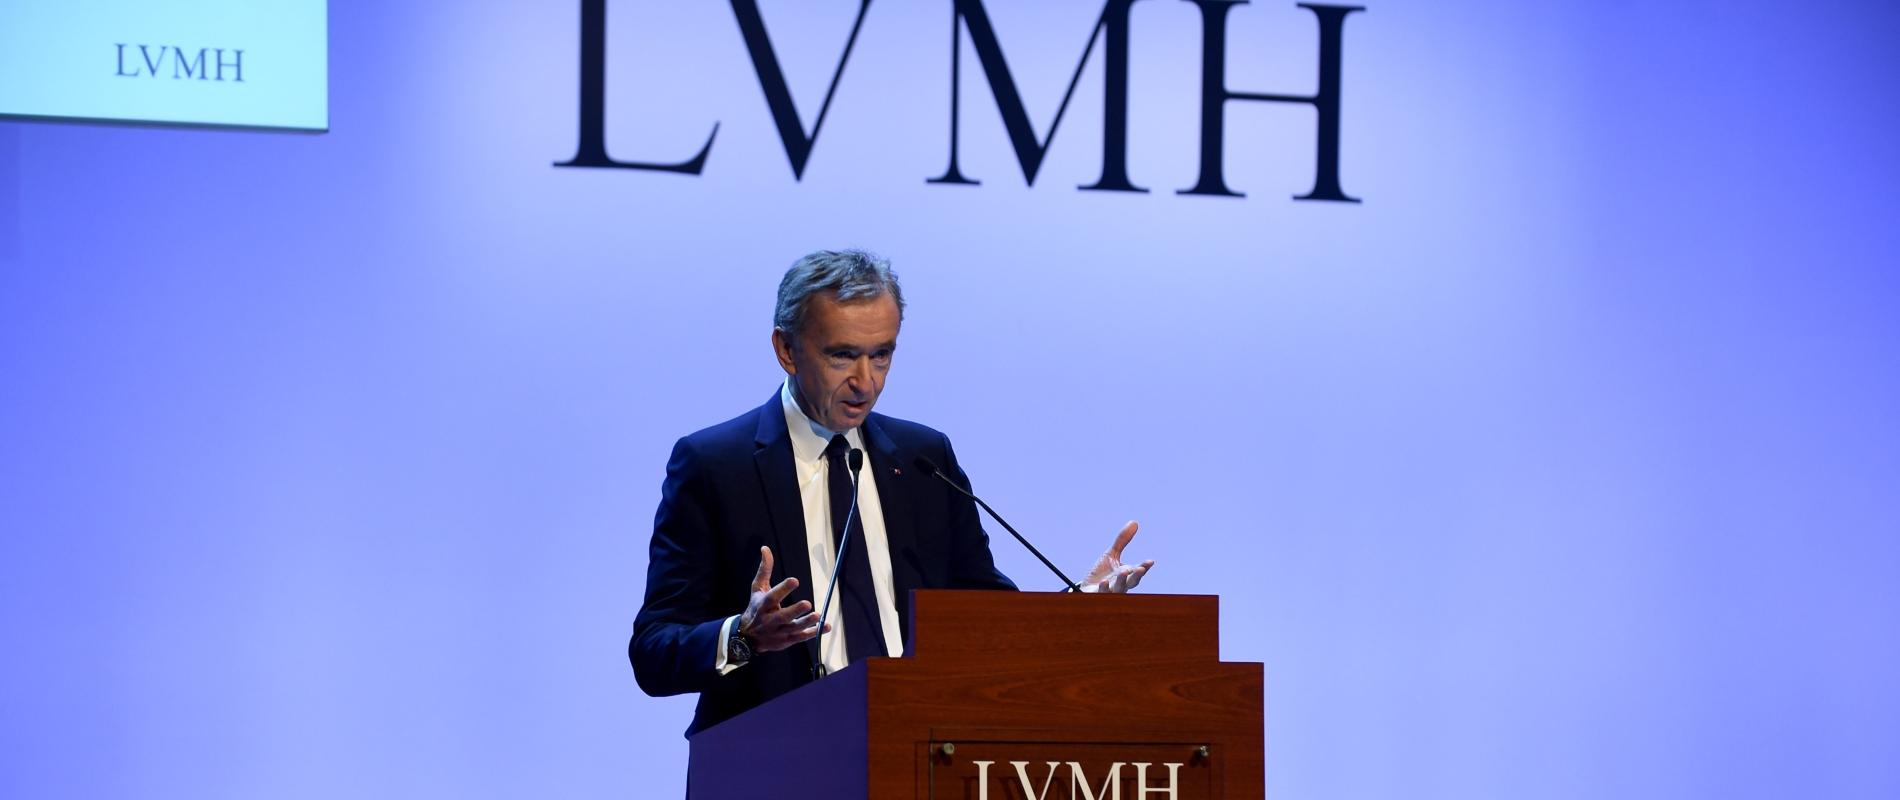 2019 chez LVMH, une année placée sous le signe d'un leadership stimulateur  de croissance et d'innovation - LVMH